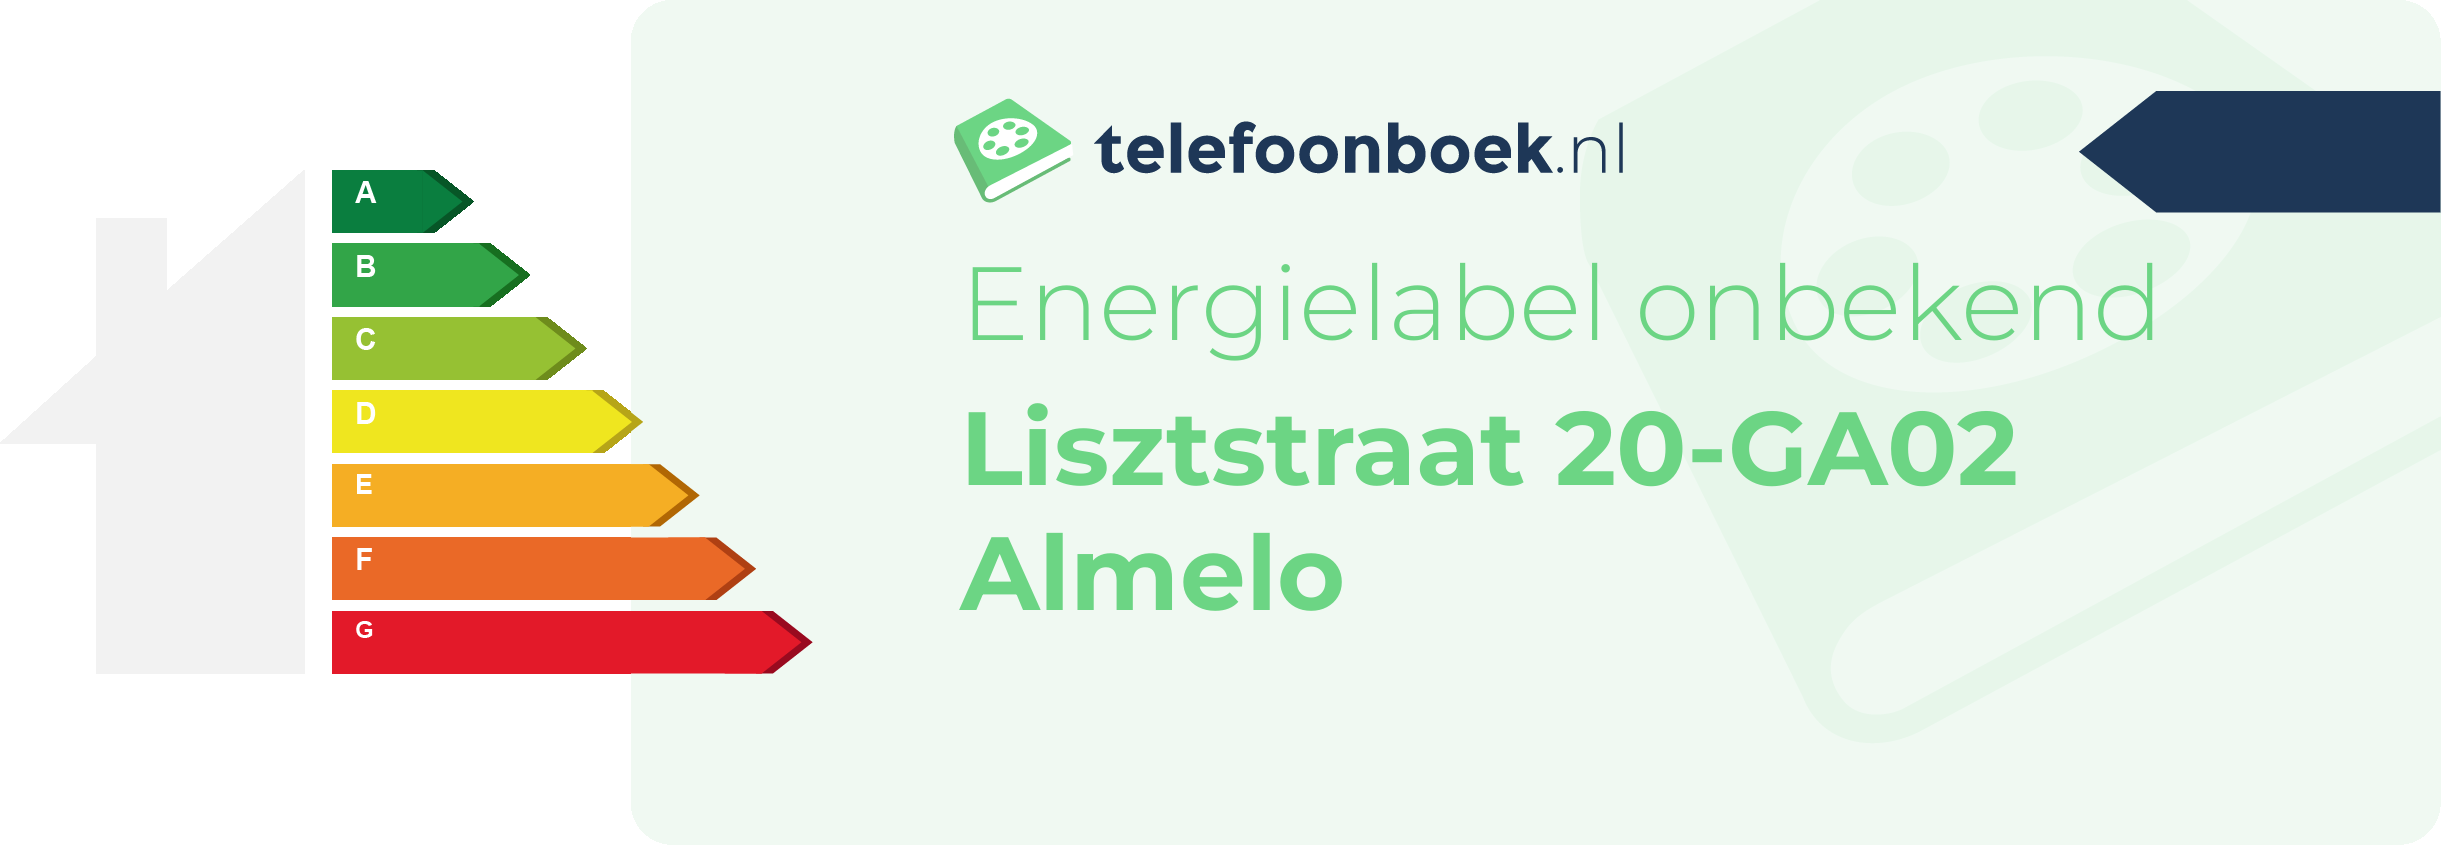 Energielabel Lisztstraat 20-GA02 Almelo